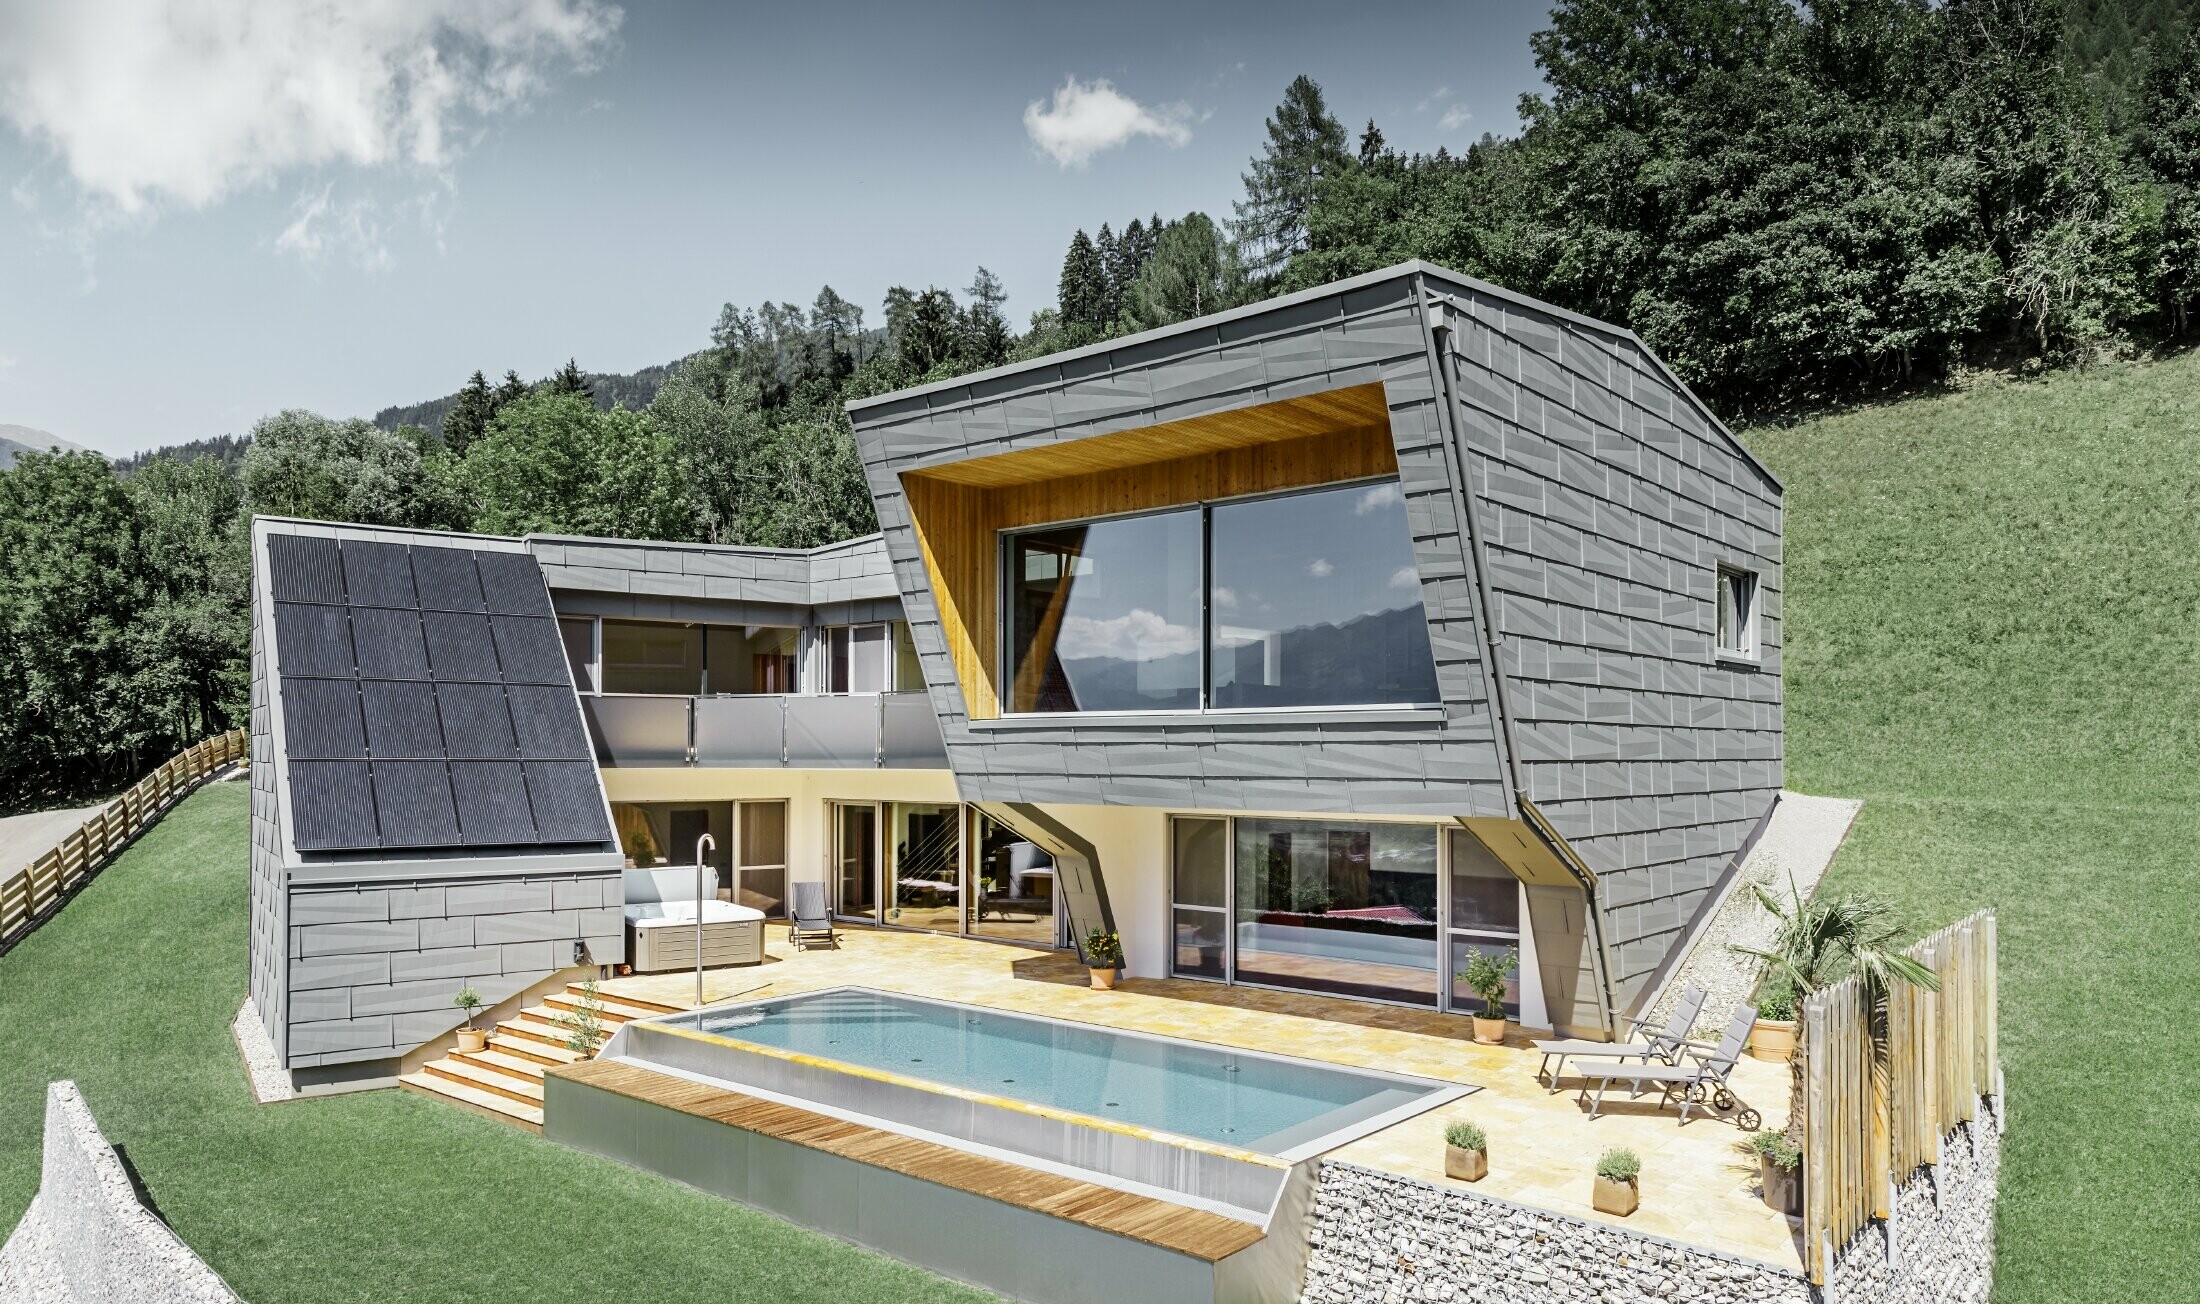 La moderna casa unifamiliare in pendenza con piscina è stata rivestita con il pannello per facciata FX.12 di PREFA in P.10 grigio chiaro.